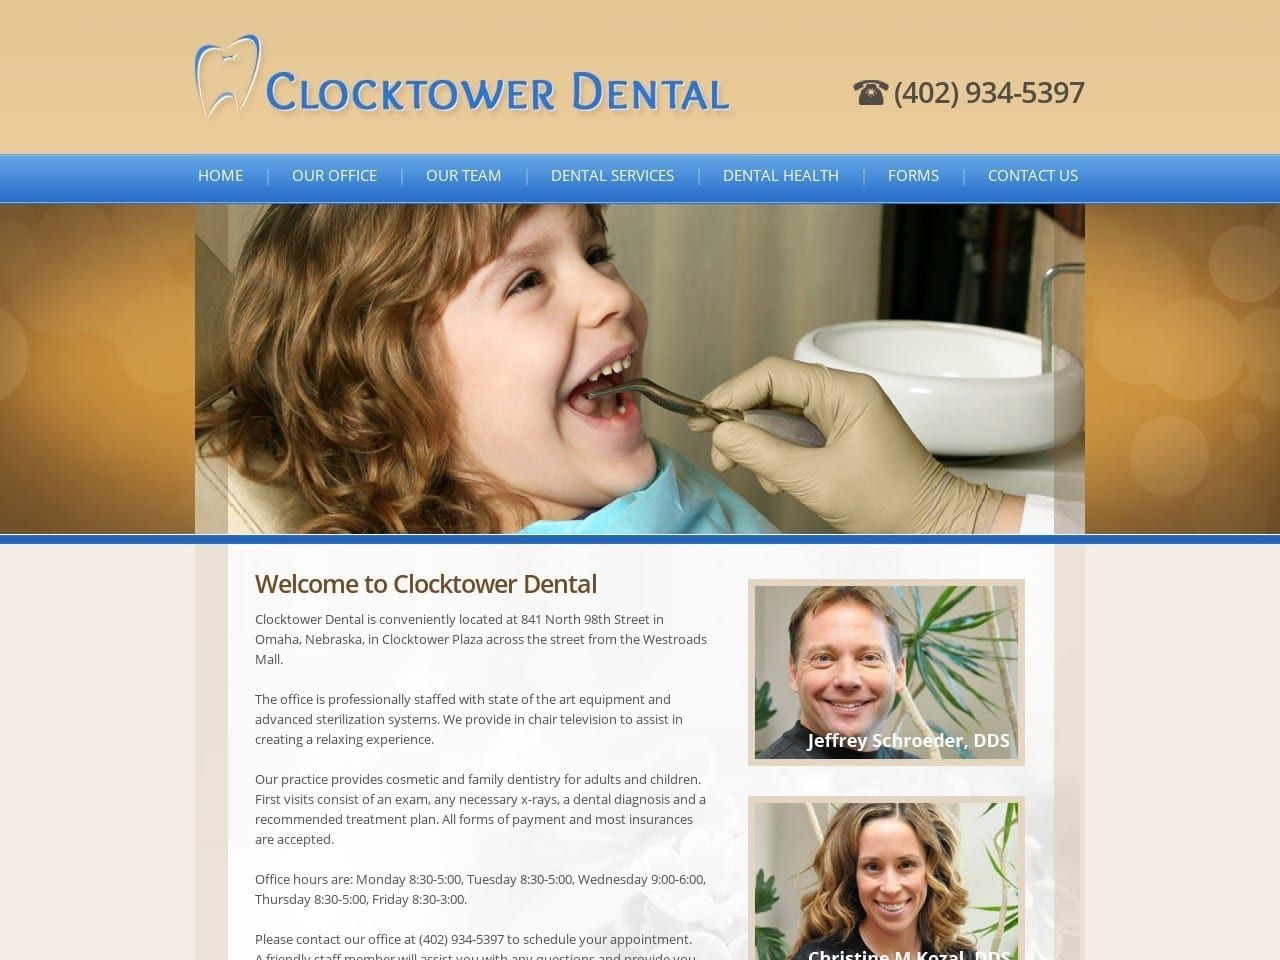 Clocktower Dental Website Screenshot from clocktowerdentalgroup.com